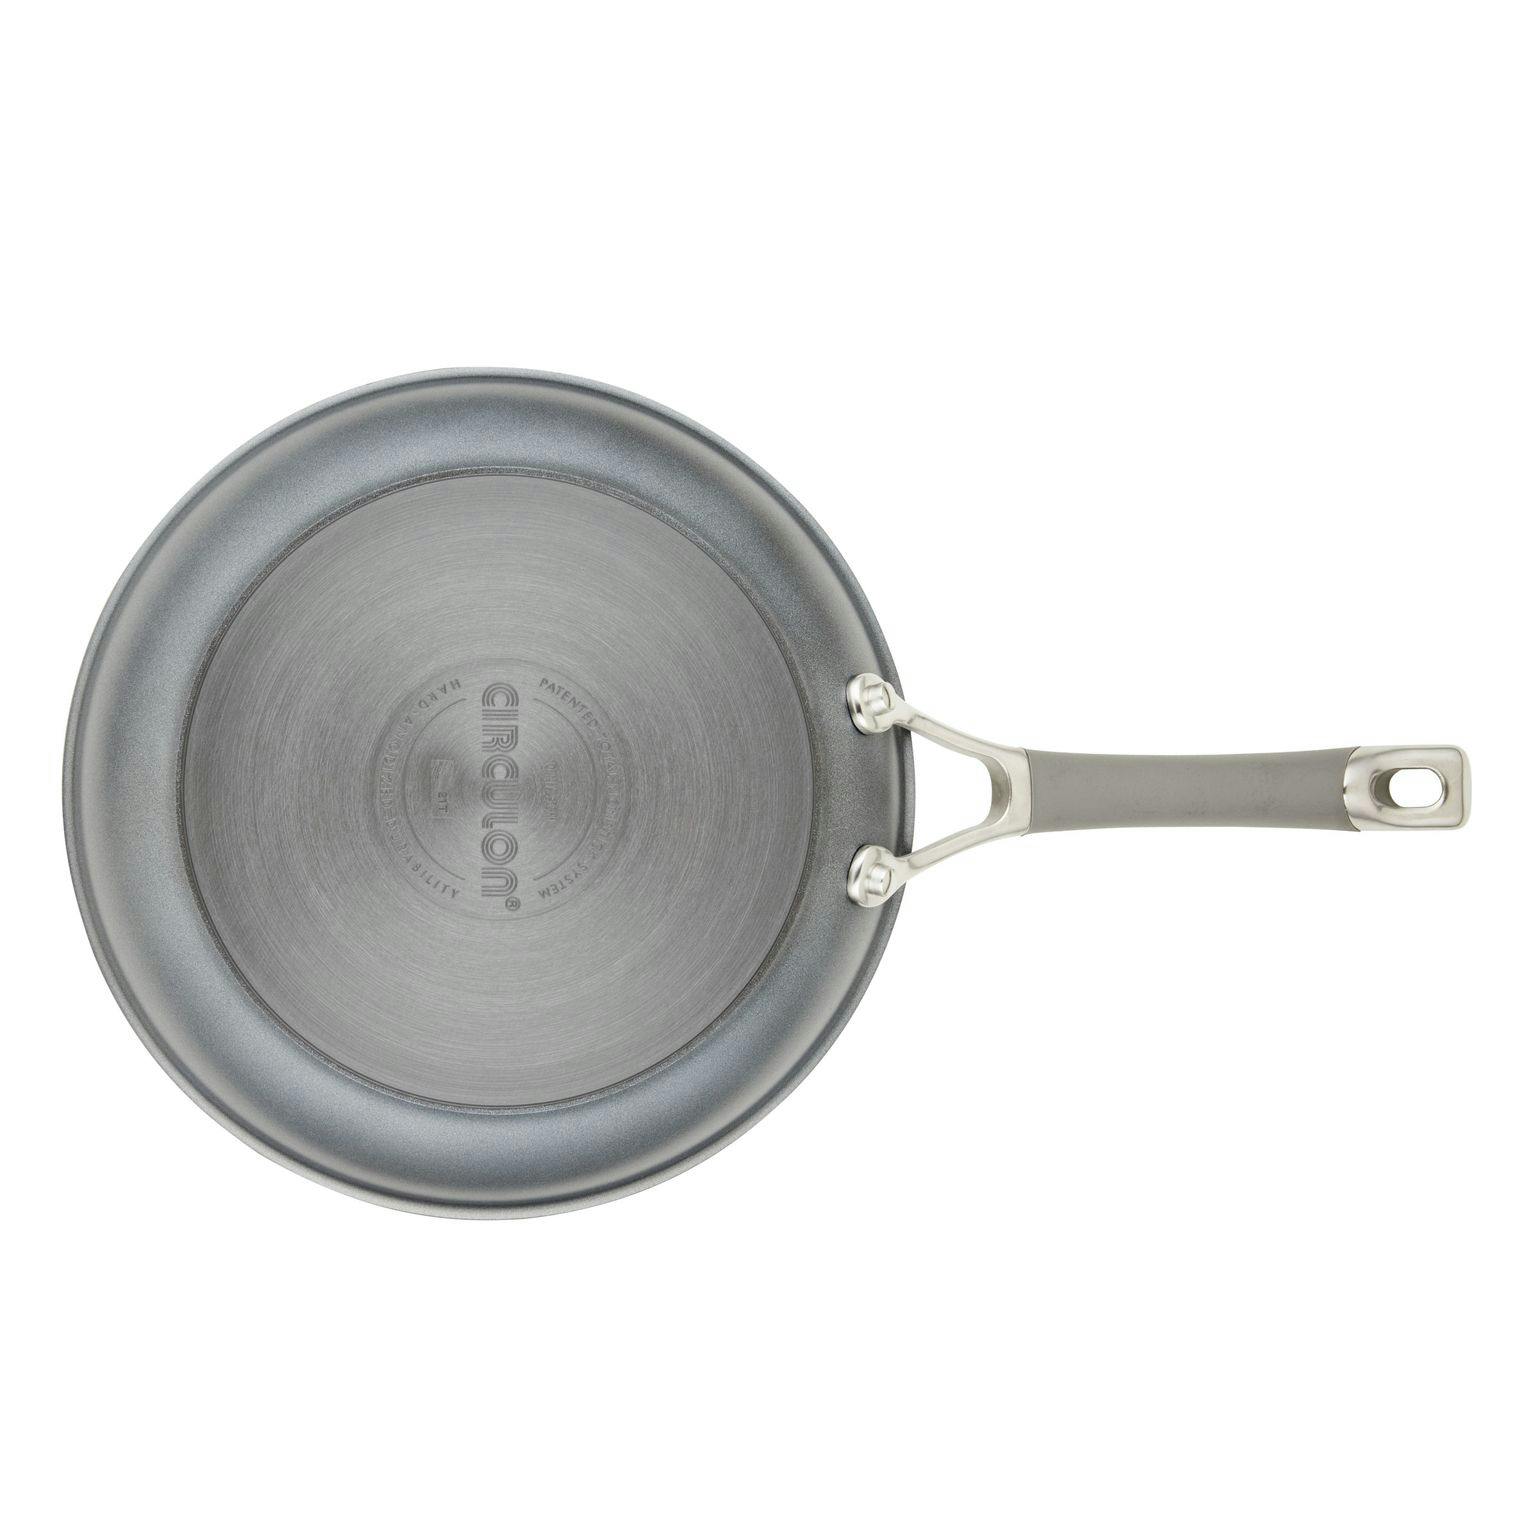 Circulon Elementum Hard-Anodized Nonstick Cookware Set, 10-Piece, Oyster Gray